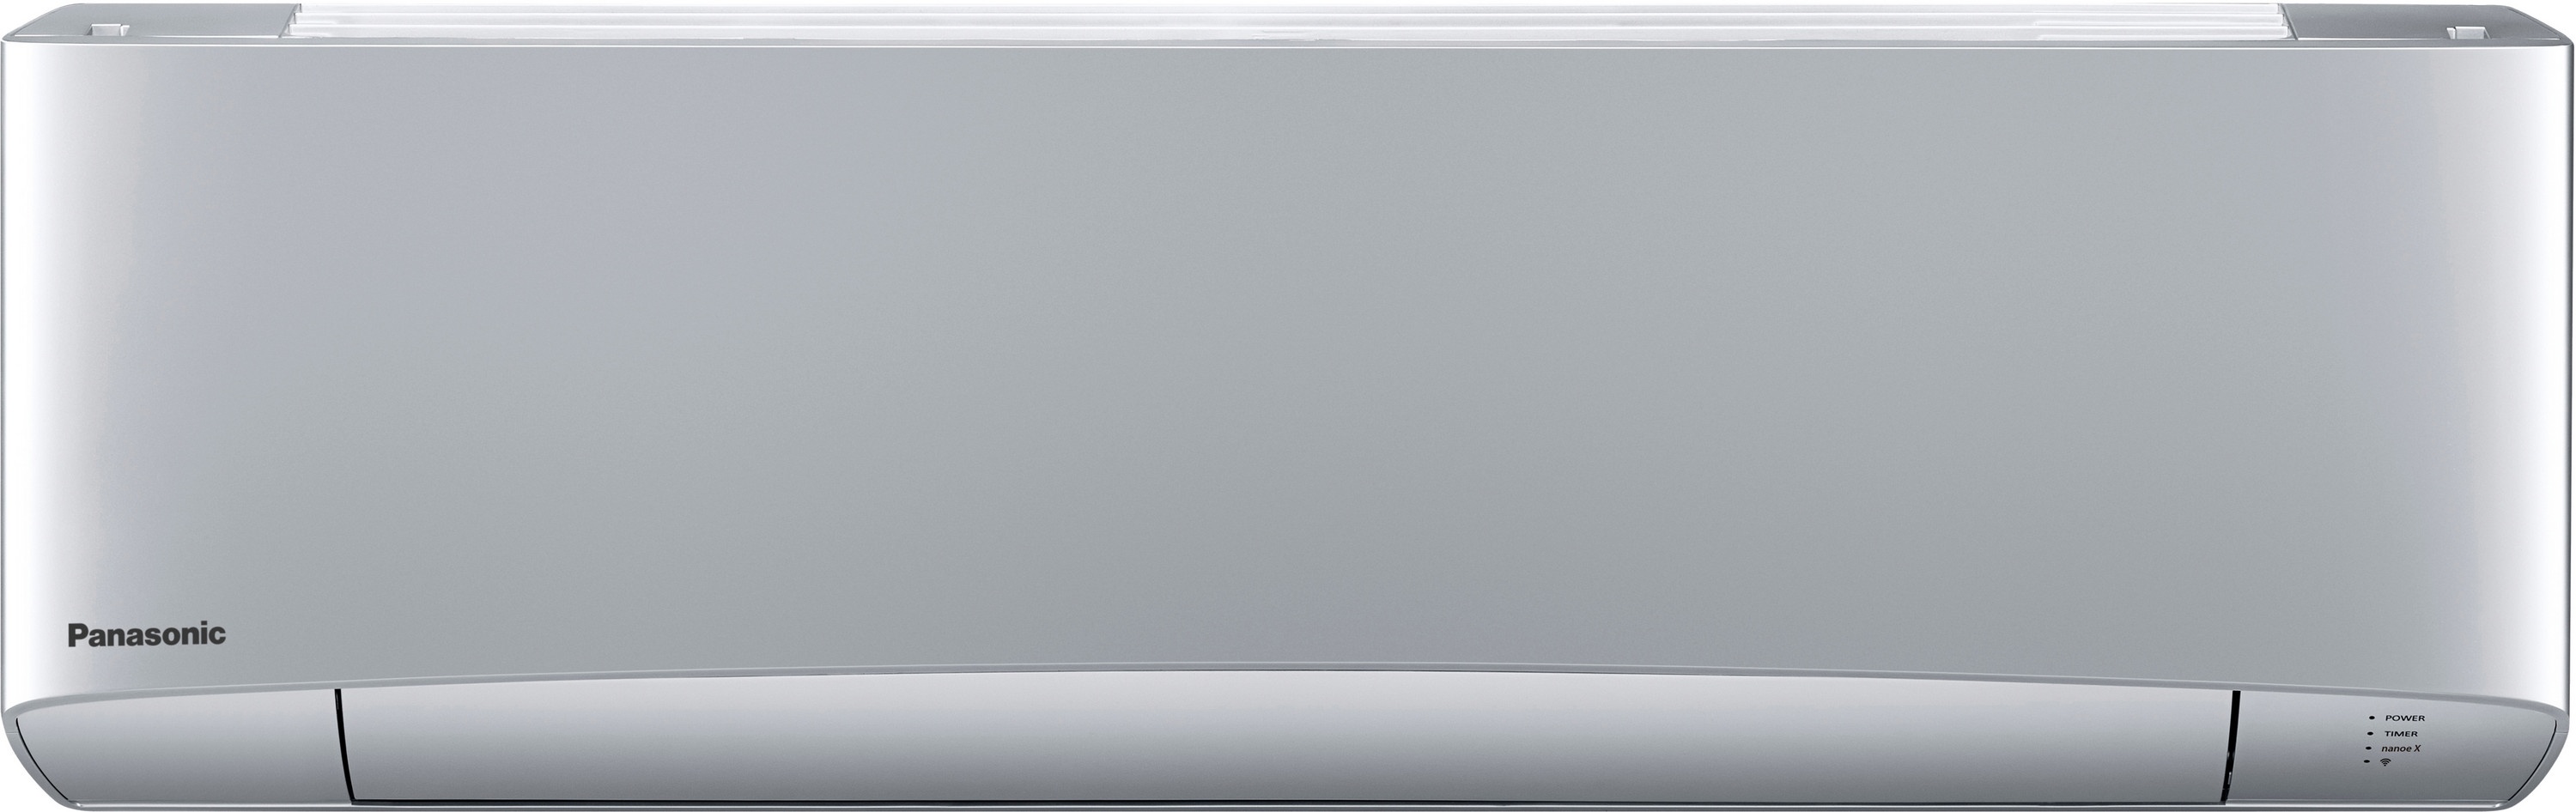 Внутренний блок мультисплит-системы Panasonic Flagship Silver CS-XZ25TKEW в интернет-магазине, главное фото